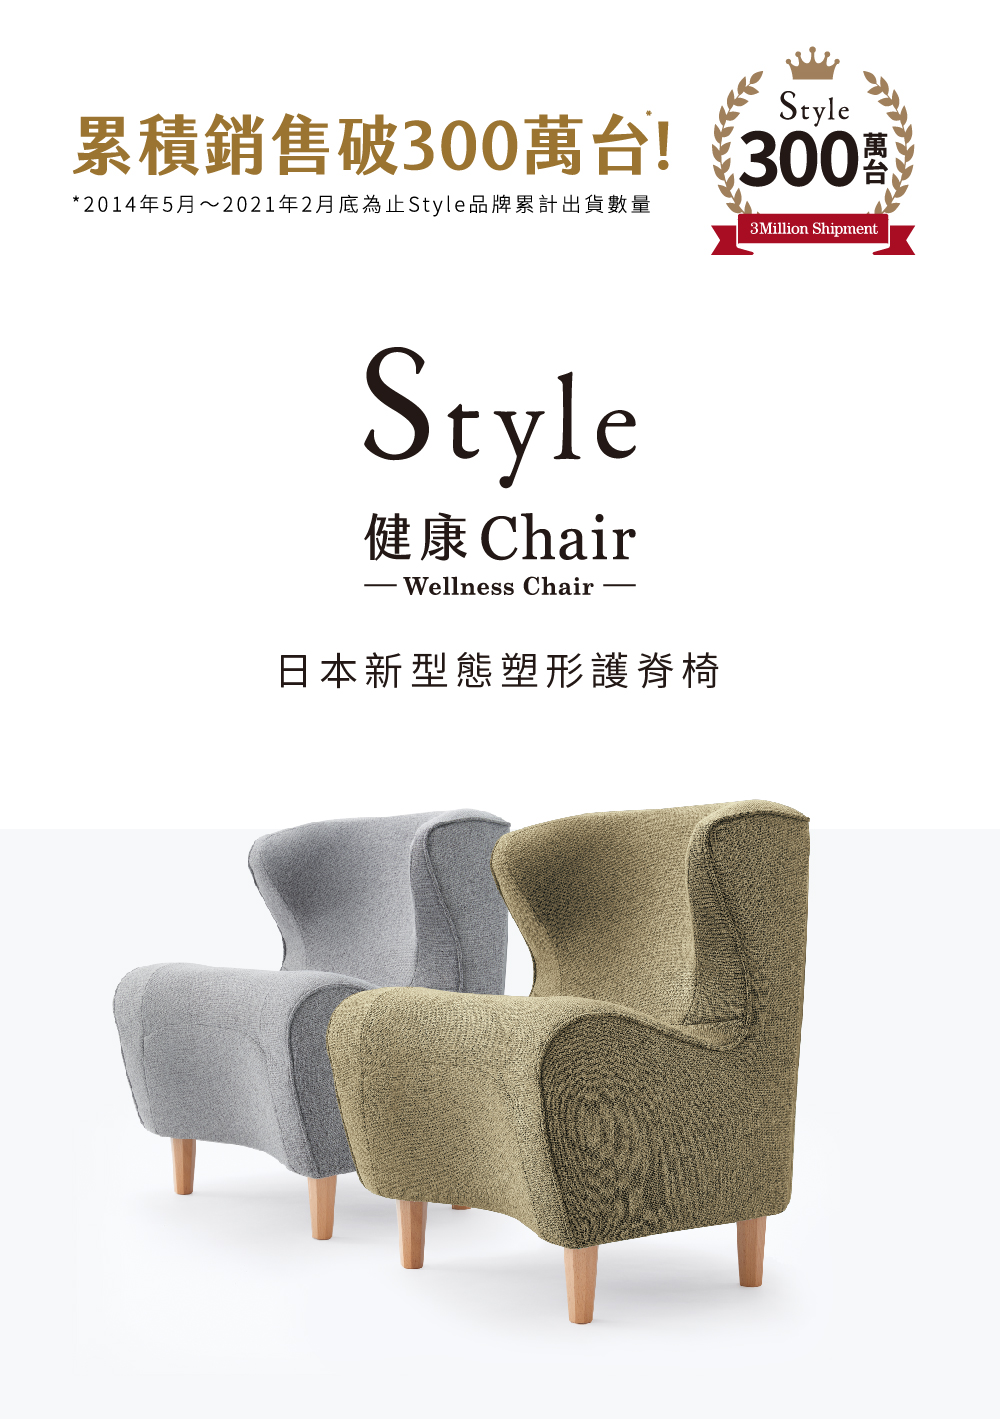 【hengstyle恆隆行】Style Chair DC 美姿調整座椅立腰款 送心情真舒 